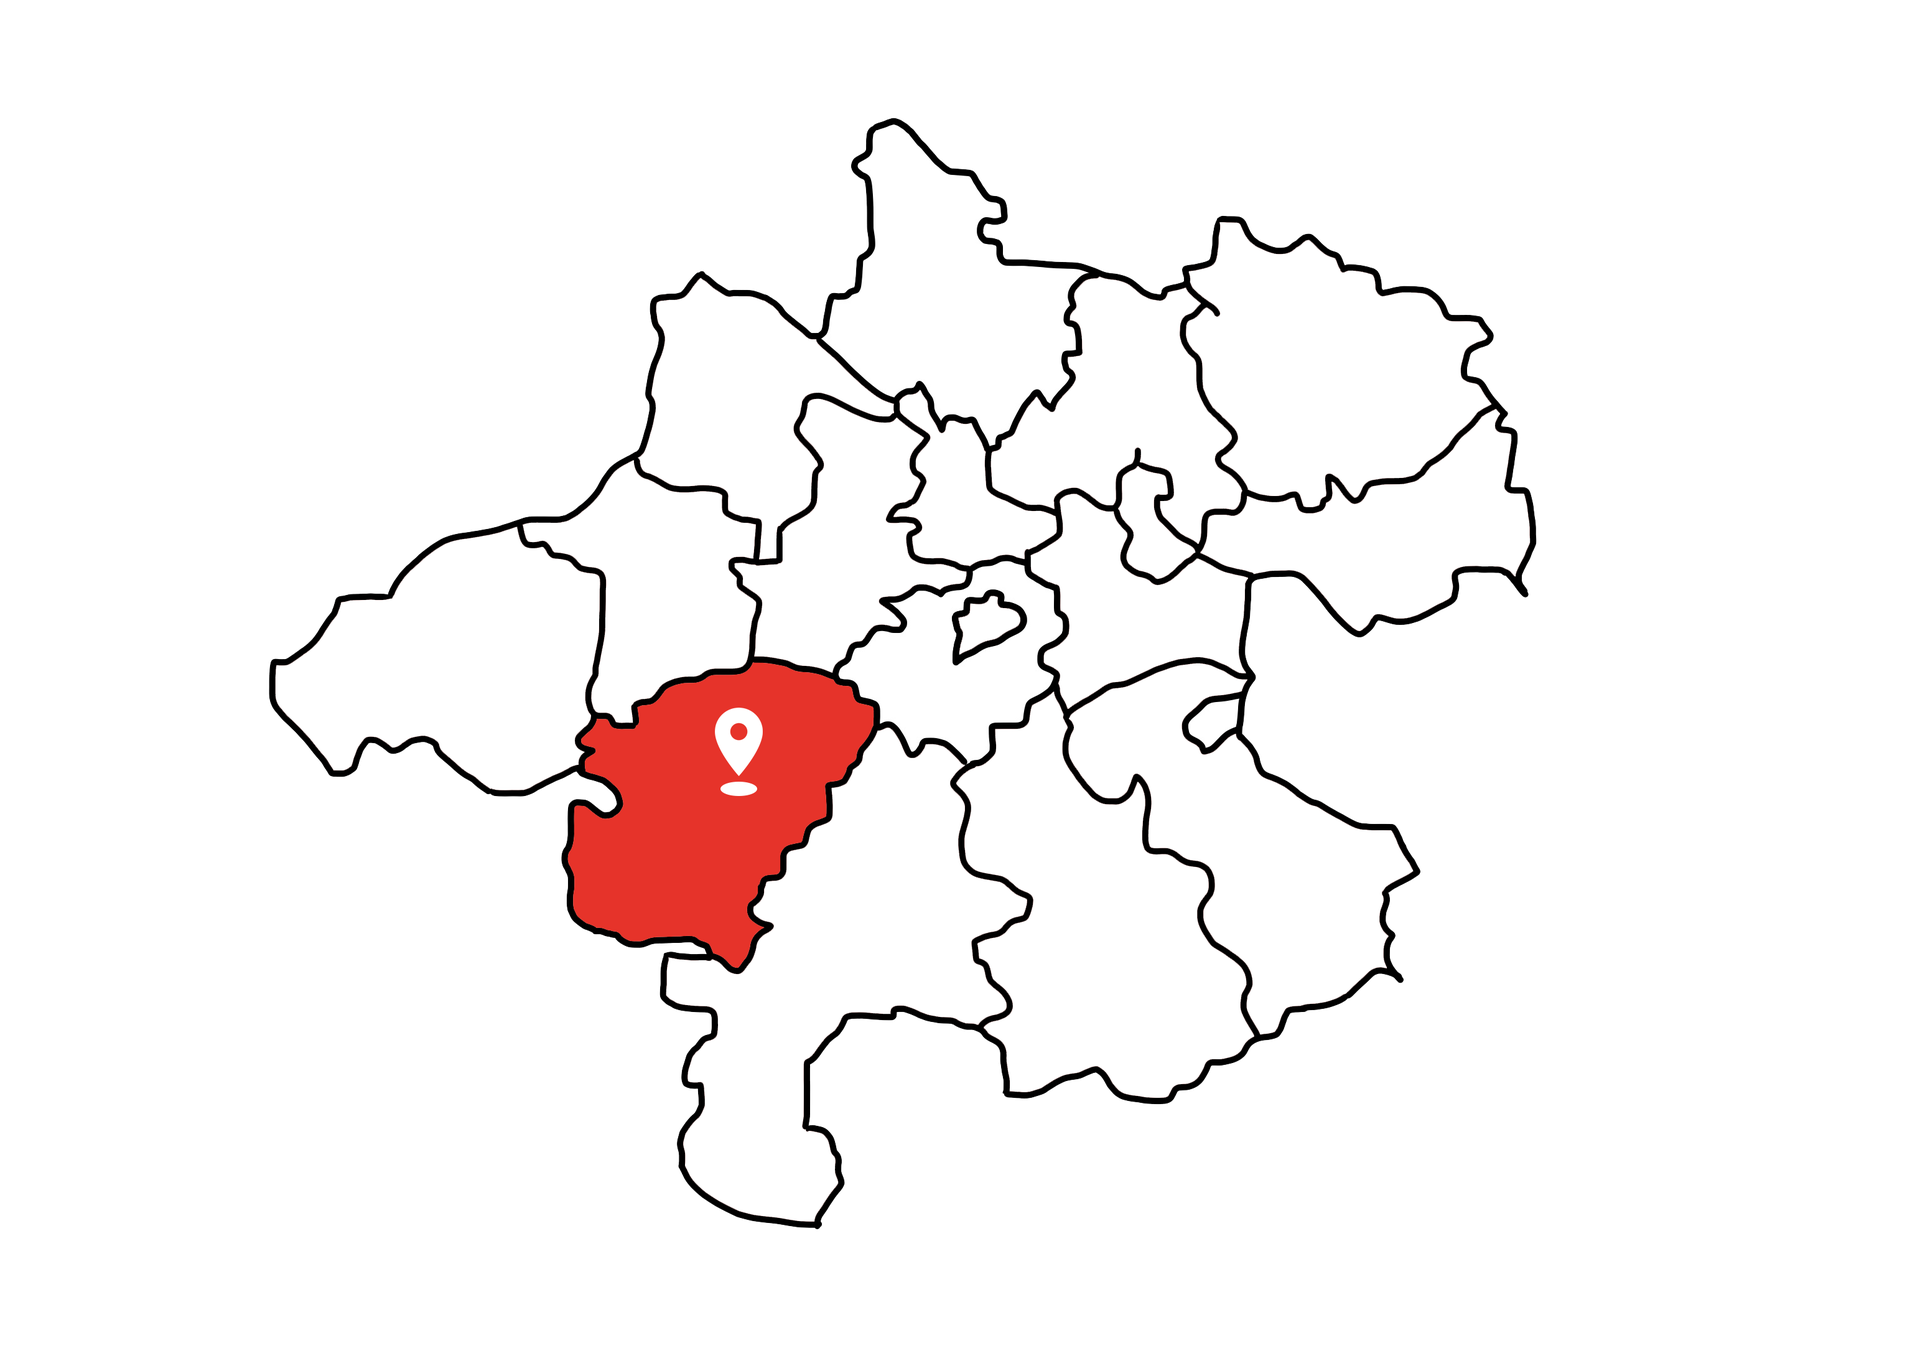 Eine Landkarte die Oberösterreich zeigt. Der Bezirk Vöcklabruck ist rot markiert. Die restlichen Bezirke sind weiß.